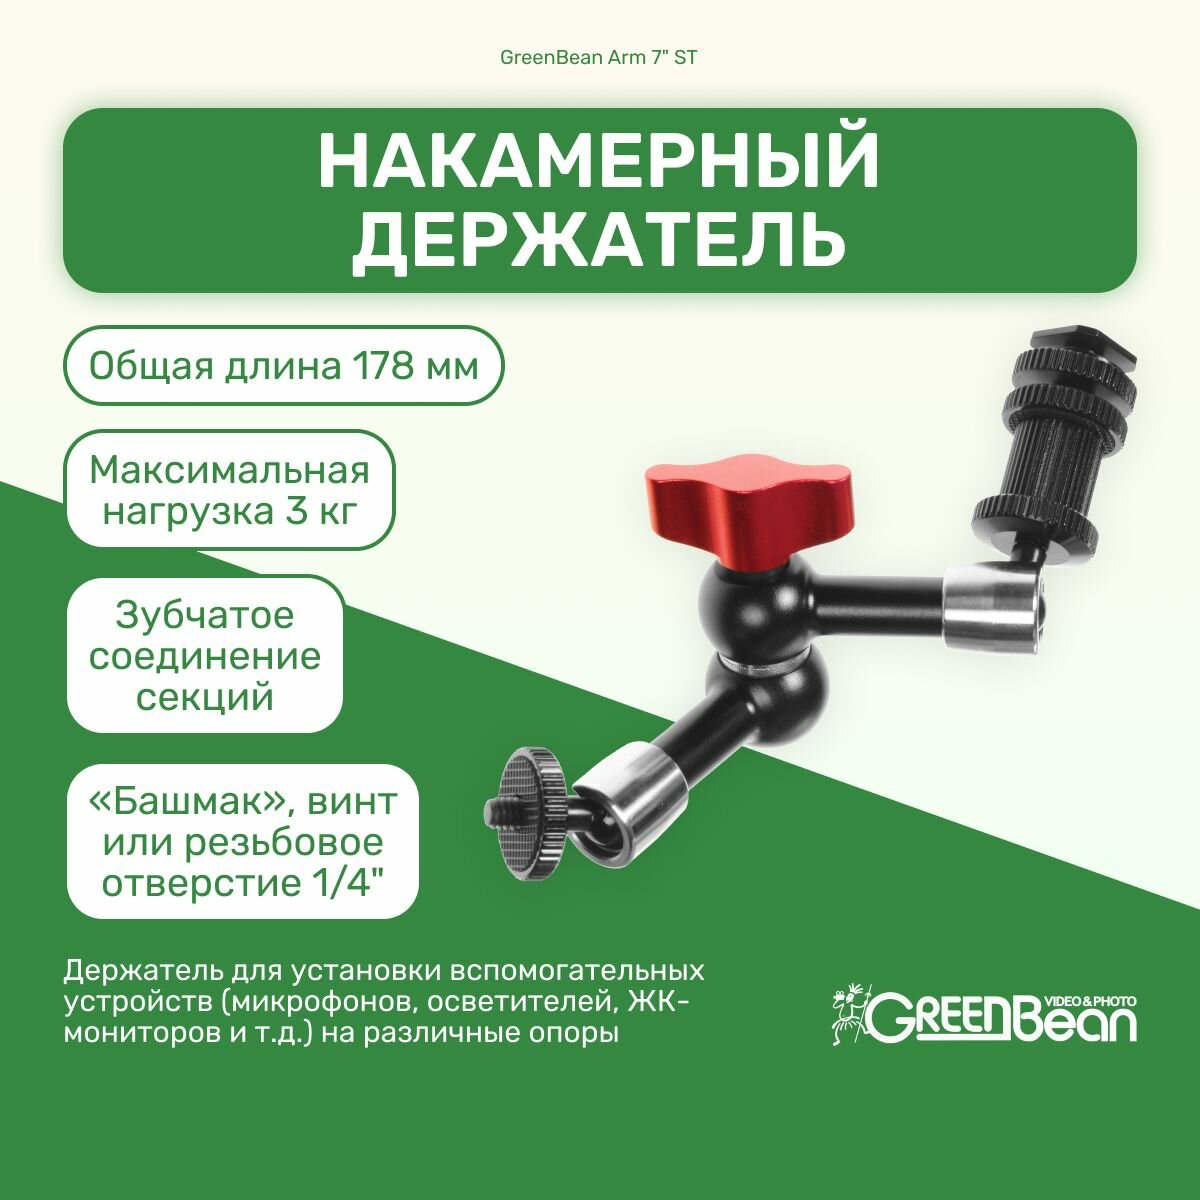 Накамерный держатель GreenBean Arm 7" ST для осветителей мониторов микрофонов и т. д. на горячий башмак для видео и фото съемок